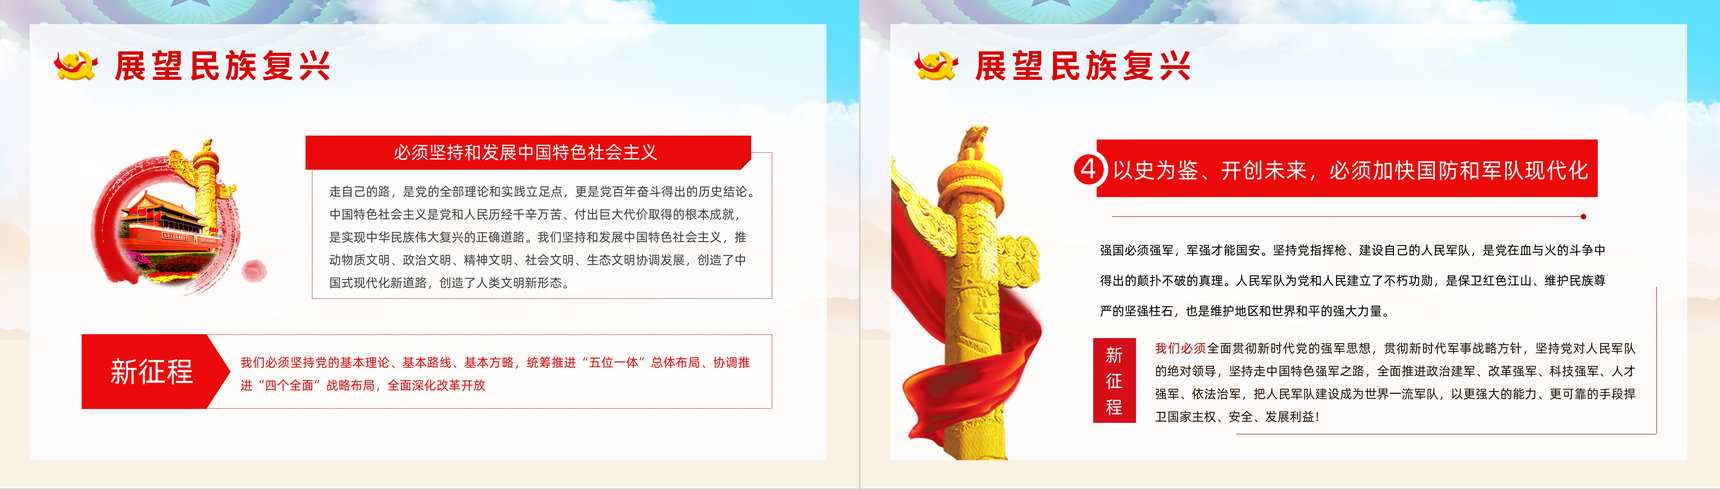 中国共产党百年辉煌宣传建党一百周年大会讲话精神解读学习动员大会PPT模板-7